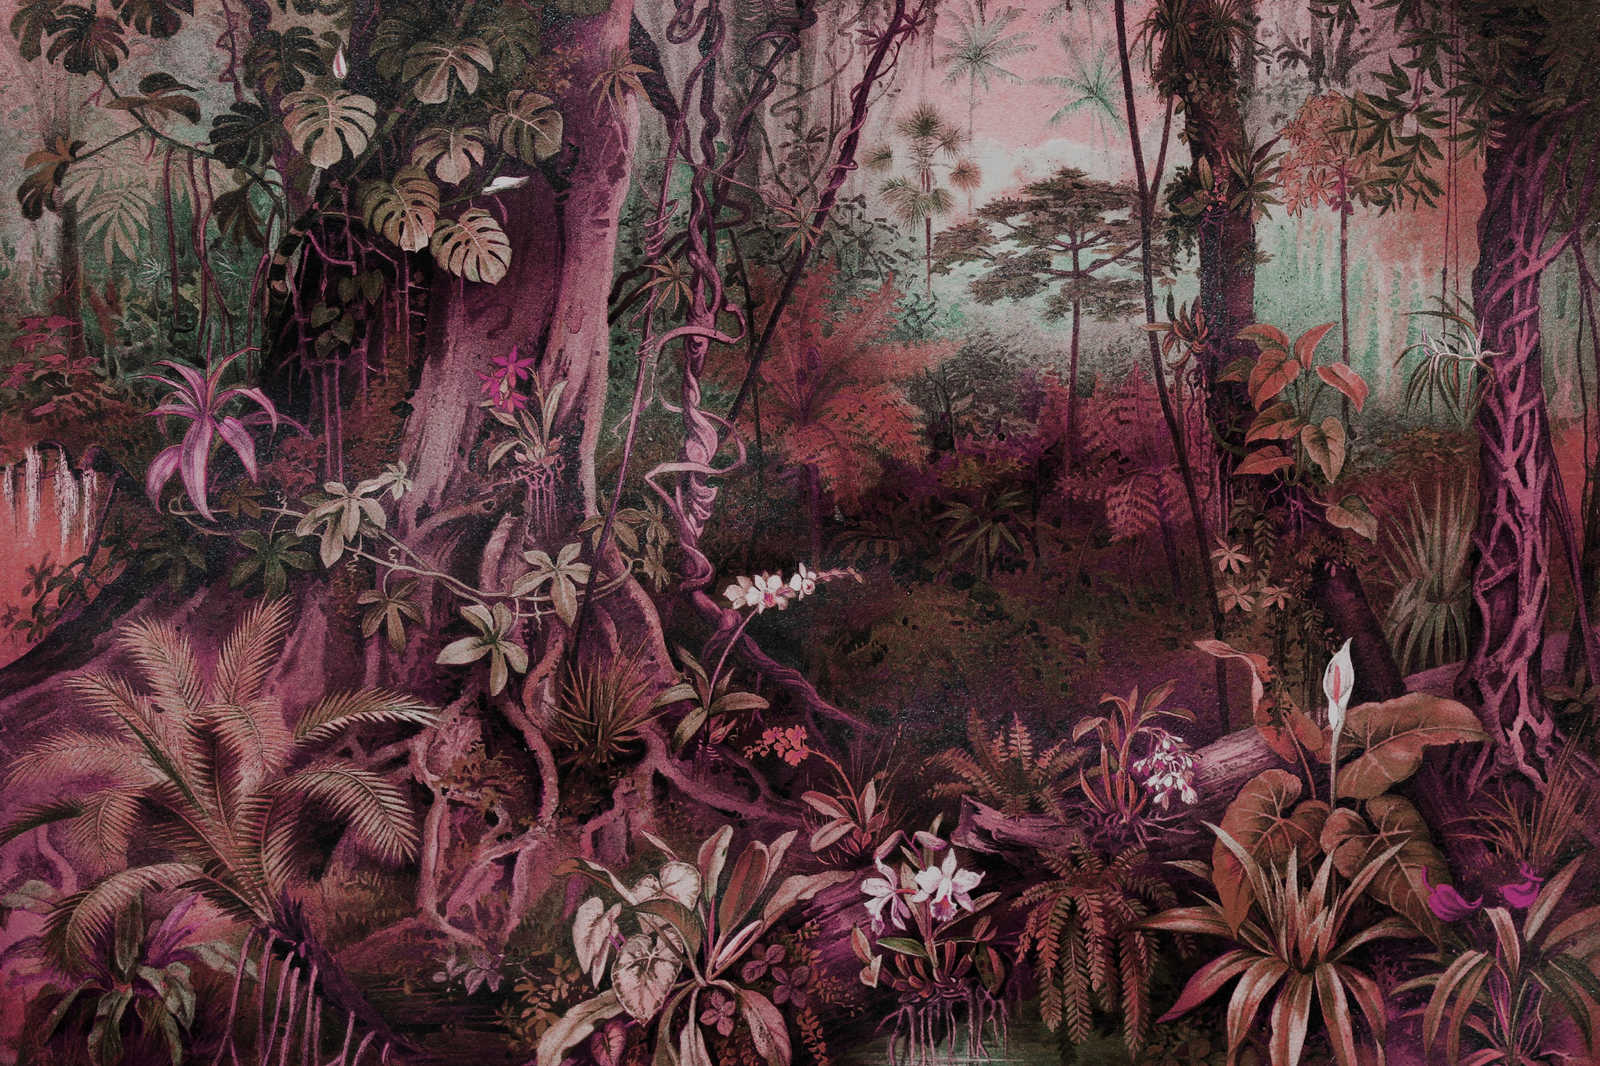             Jungle canvas schilderij in tekenstijl | paars, groen - 0,90 m x 0,60 m
        